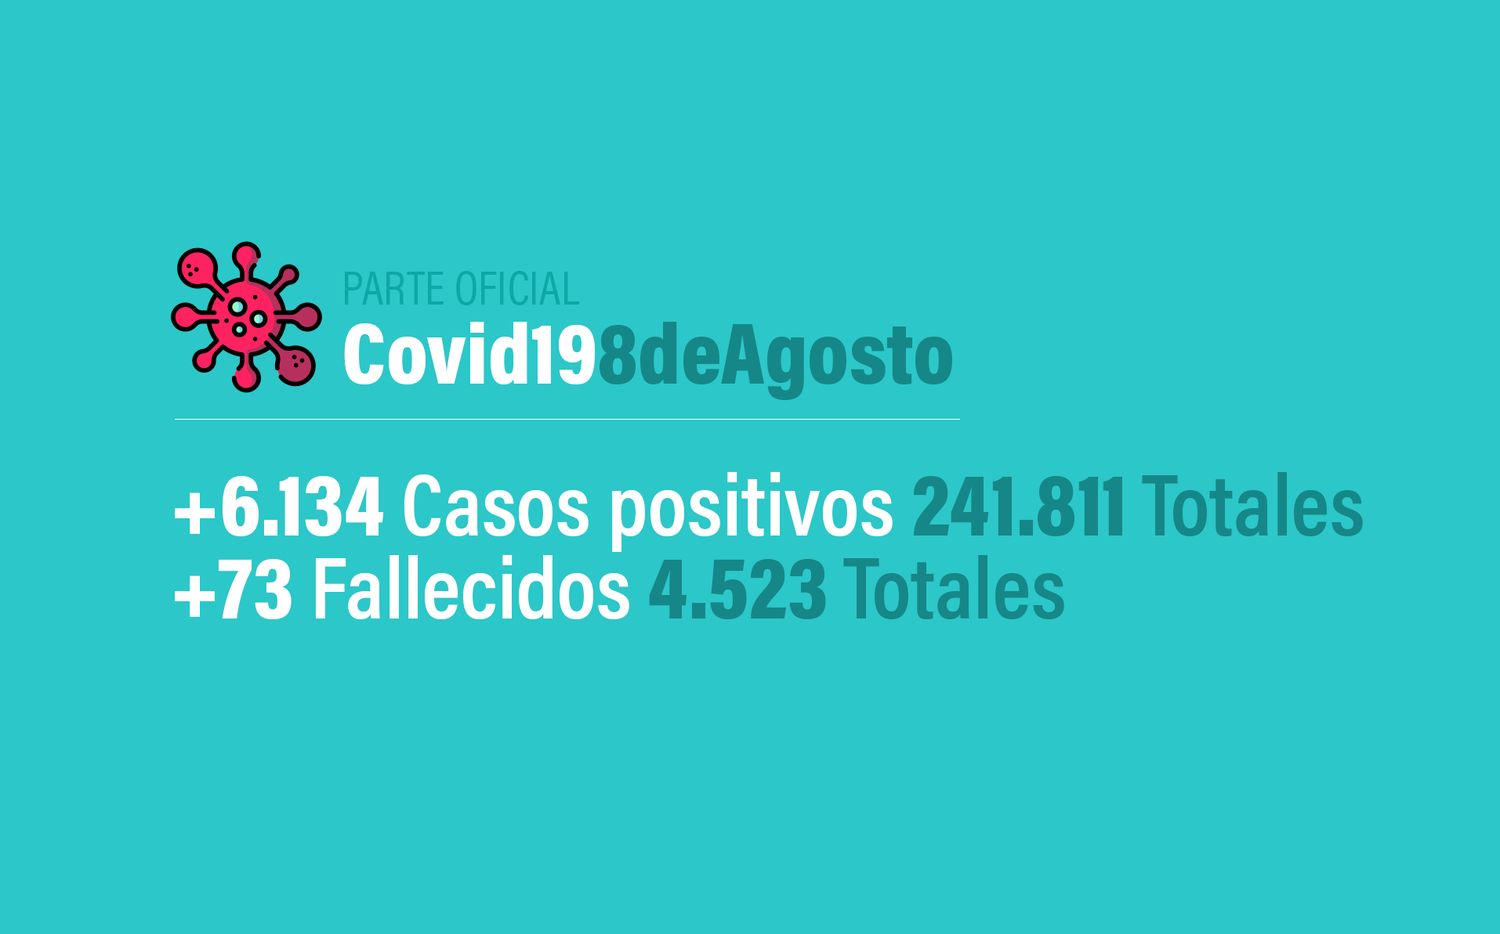 Coronavirus en Argentina: 6134 nuevos casos, 241811 confirmados y 4523 muertes, al 8 de agosto